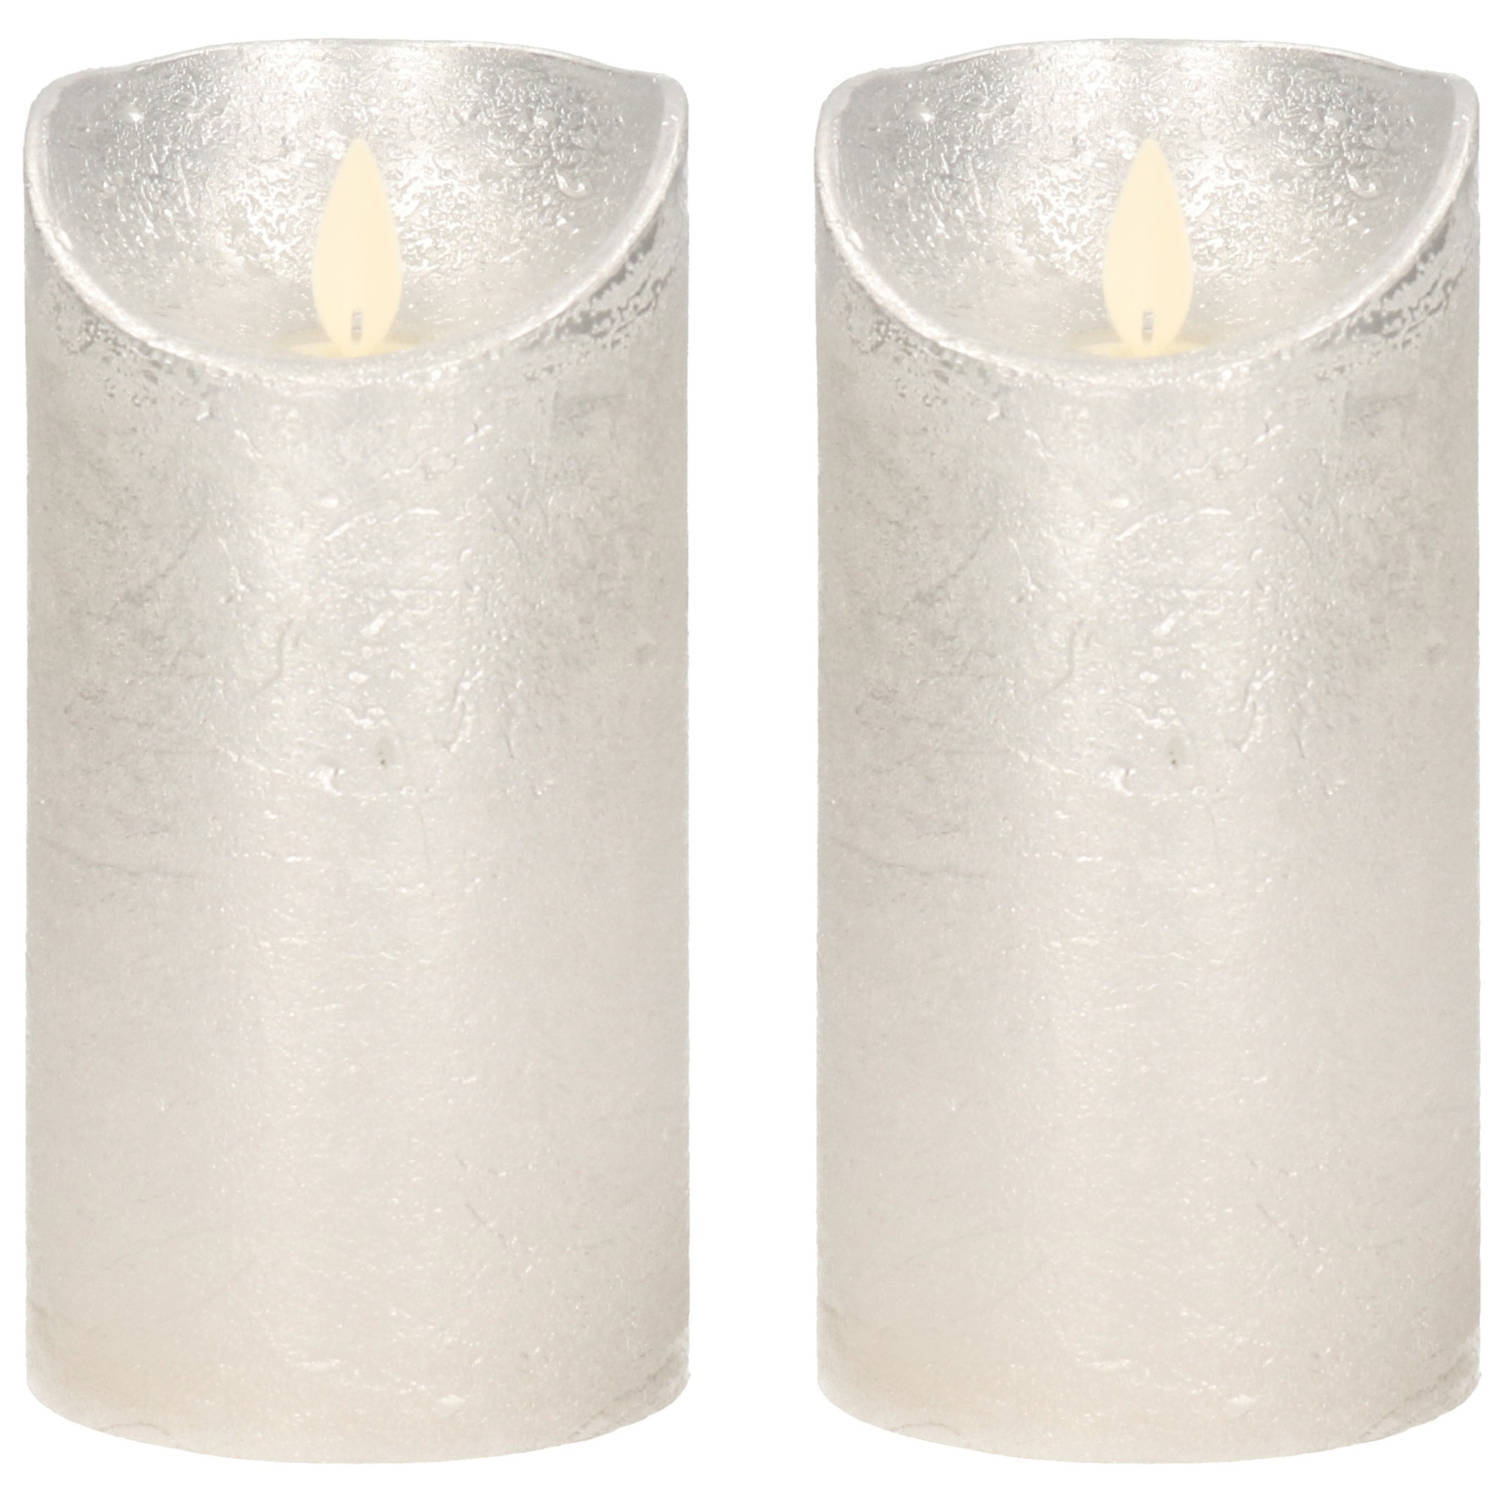 Anna's Collection 2x Zilveren LED kaarsen / stompkaarsen 15 cm - Luxe kaarsen op batterijen met bewegende vlam